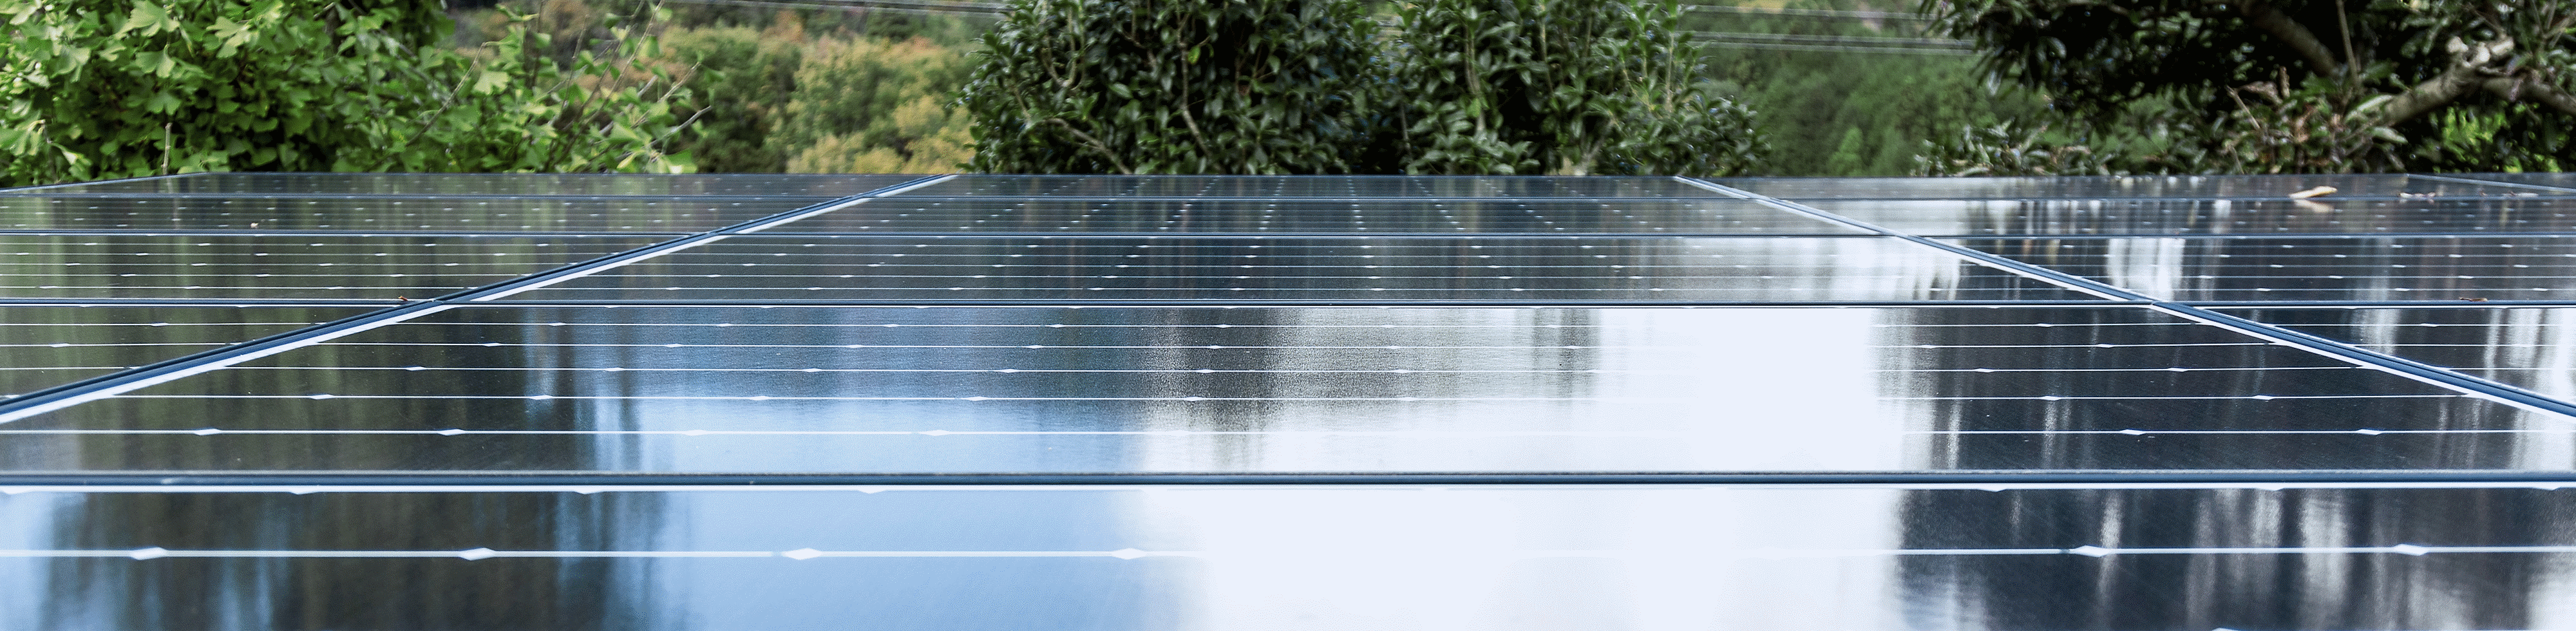 Photo du toit d'une usine couvert de panneaux solaires